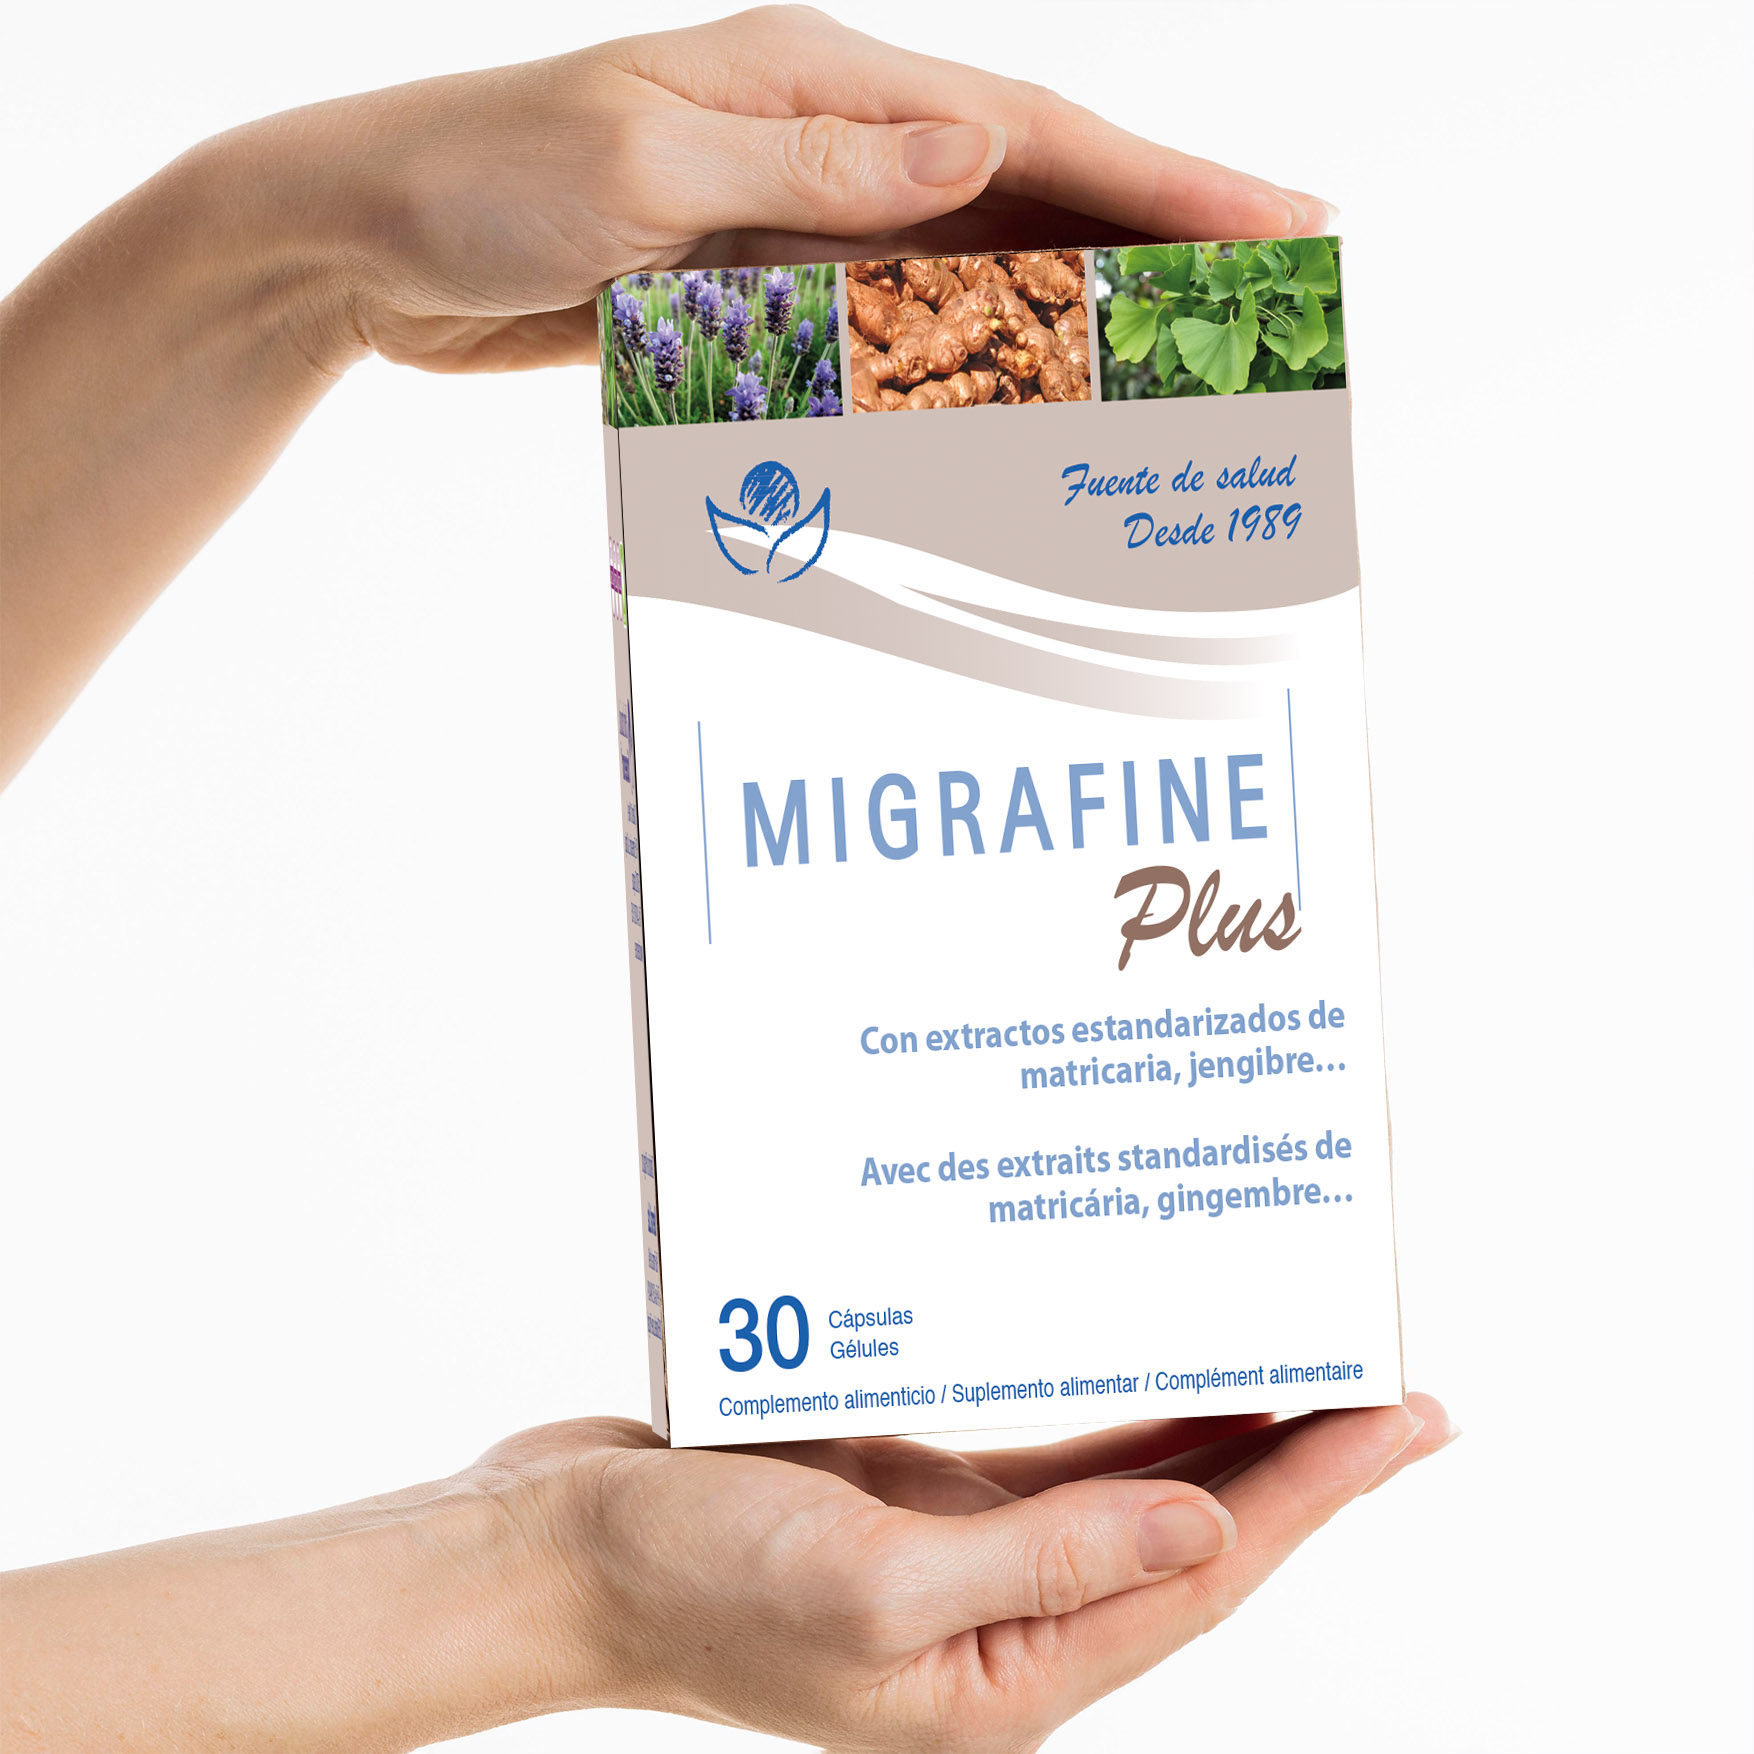 Bibefy y sus soluciones para la migraña y dolores de cabeza